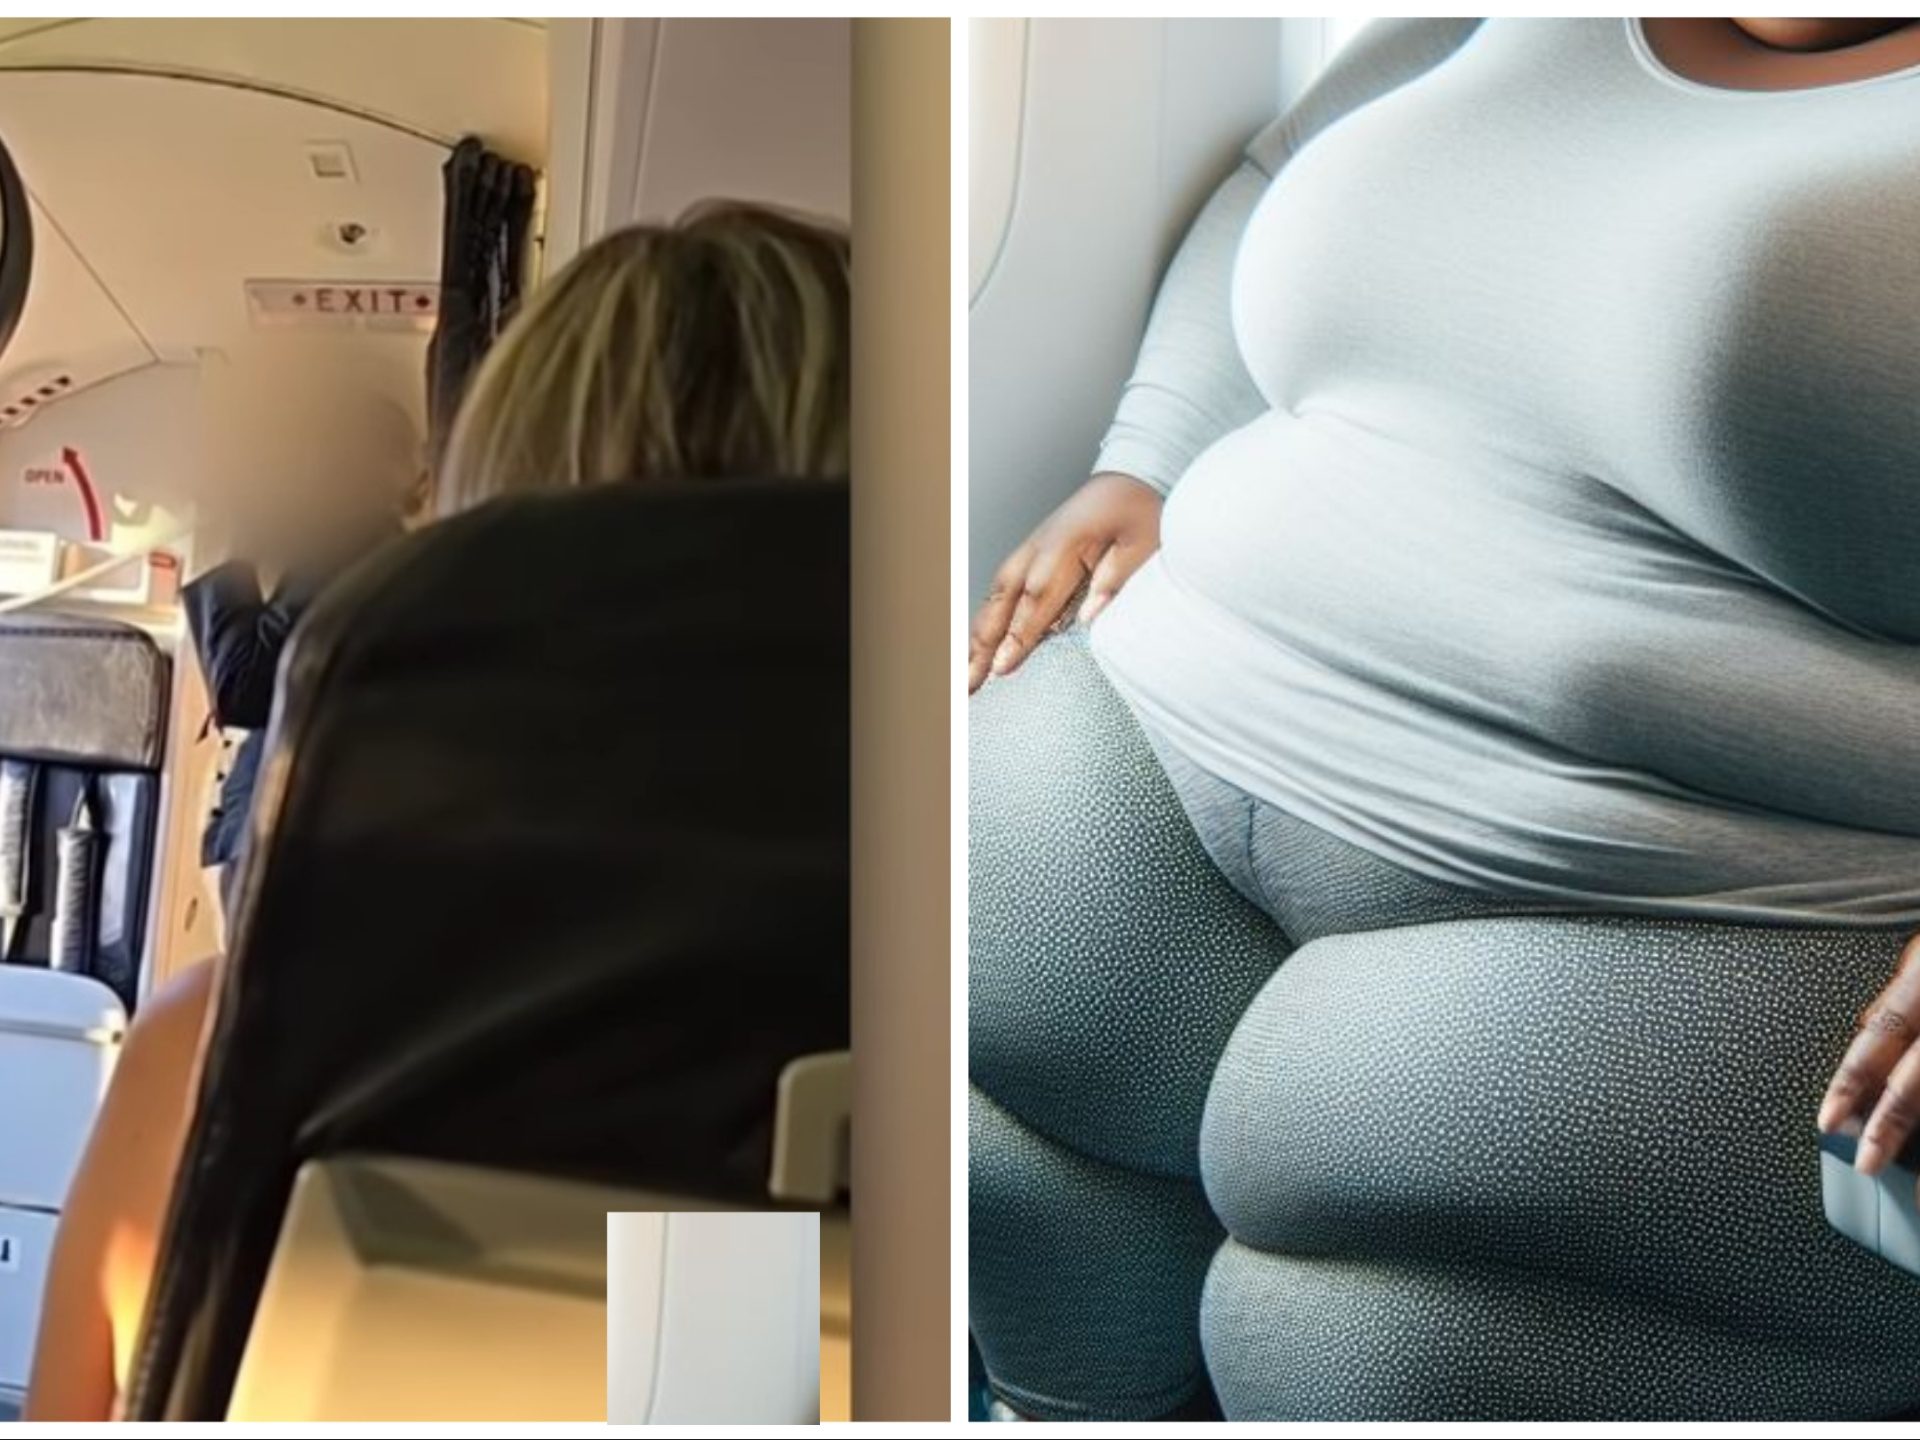 Vuelo cancelado por aerolínea para dos pasajeros obesos: "Humillados por las azafatas"